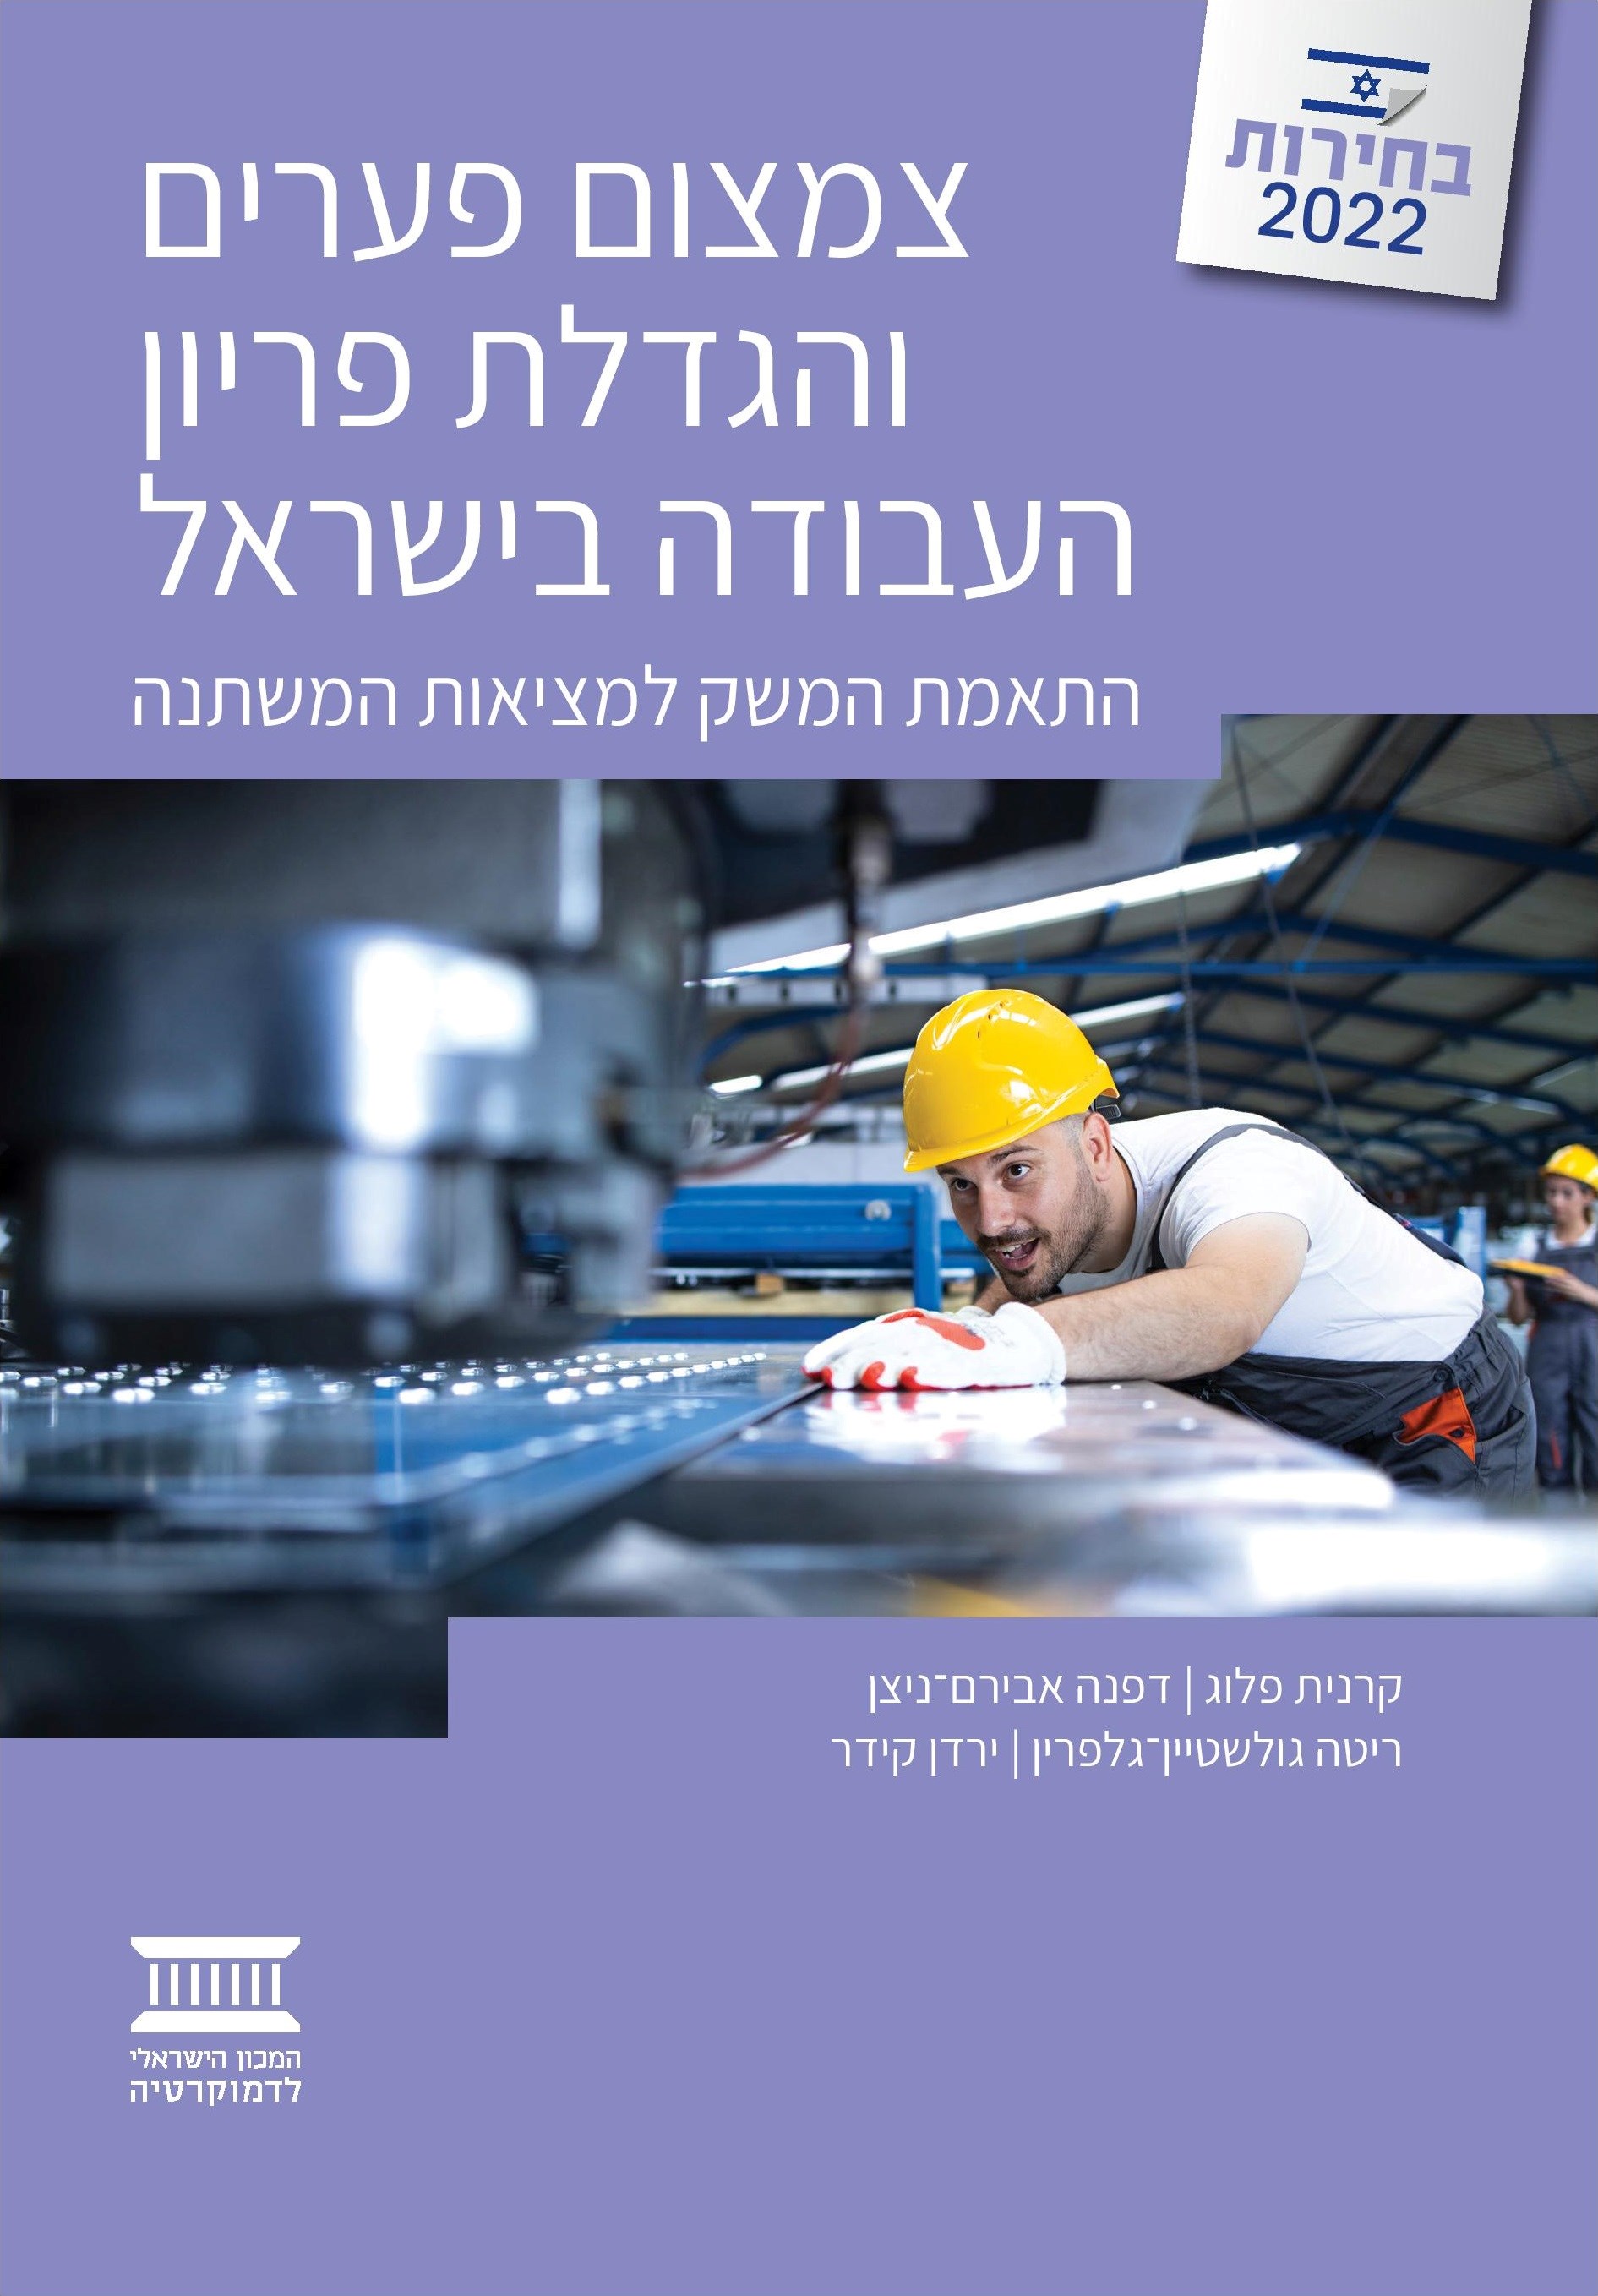 צמצום פערים והגדלת פריון העבודה בישראל: התאמת המשק למציאות המשתנה